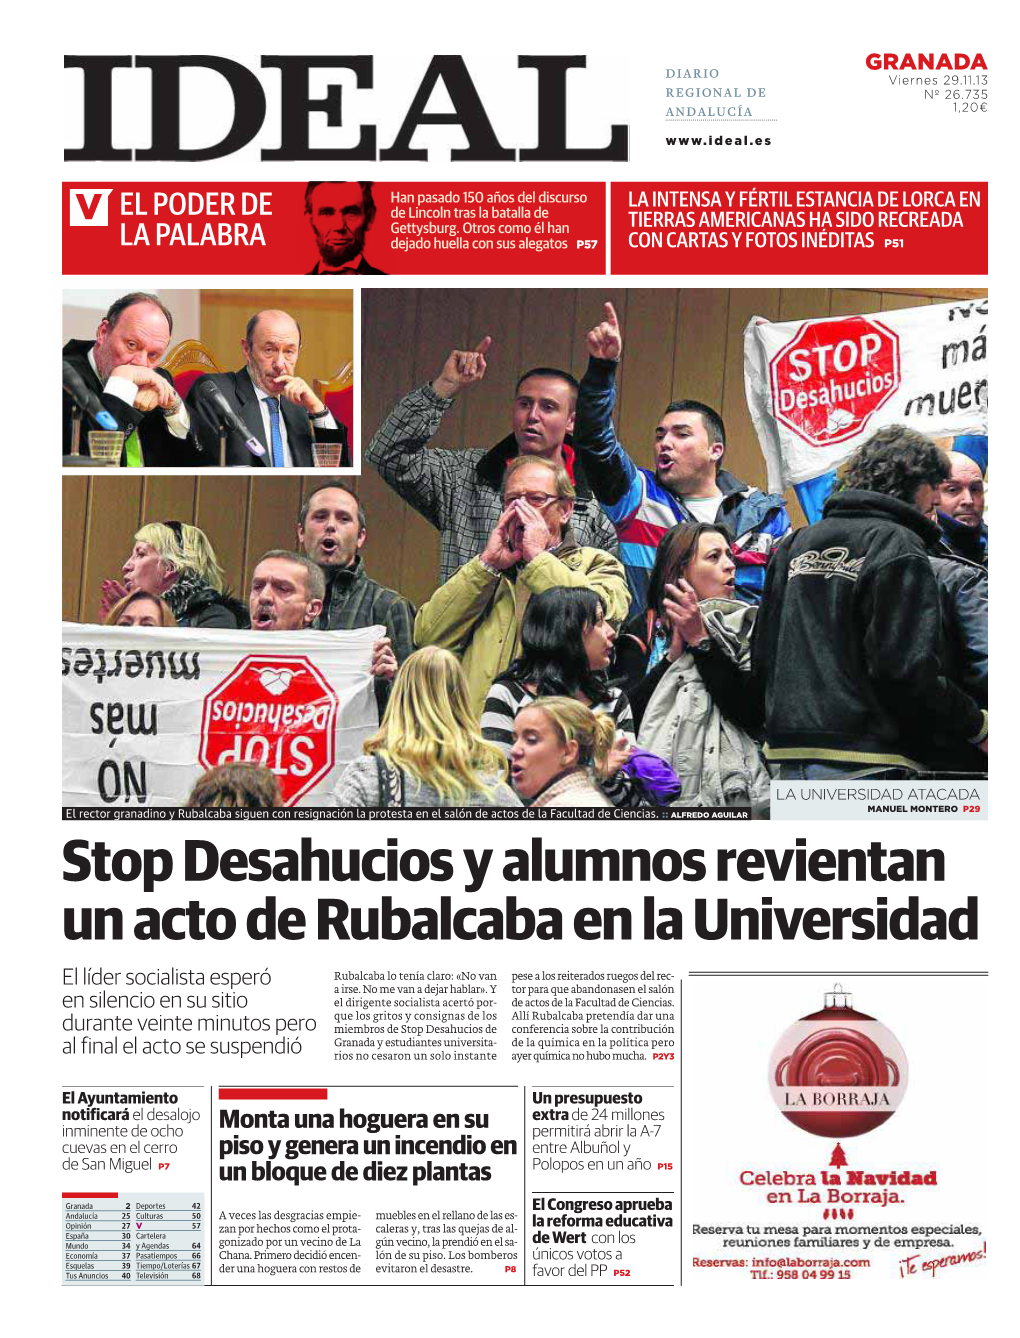 Stop Desahucios Y Alumnos Revientan Un Acto De Rubalcaba En La Universidad